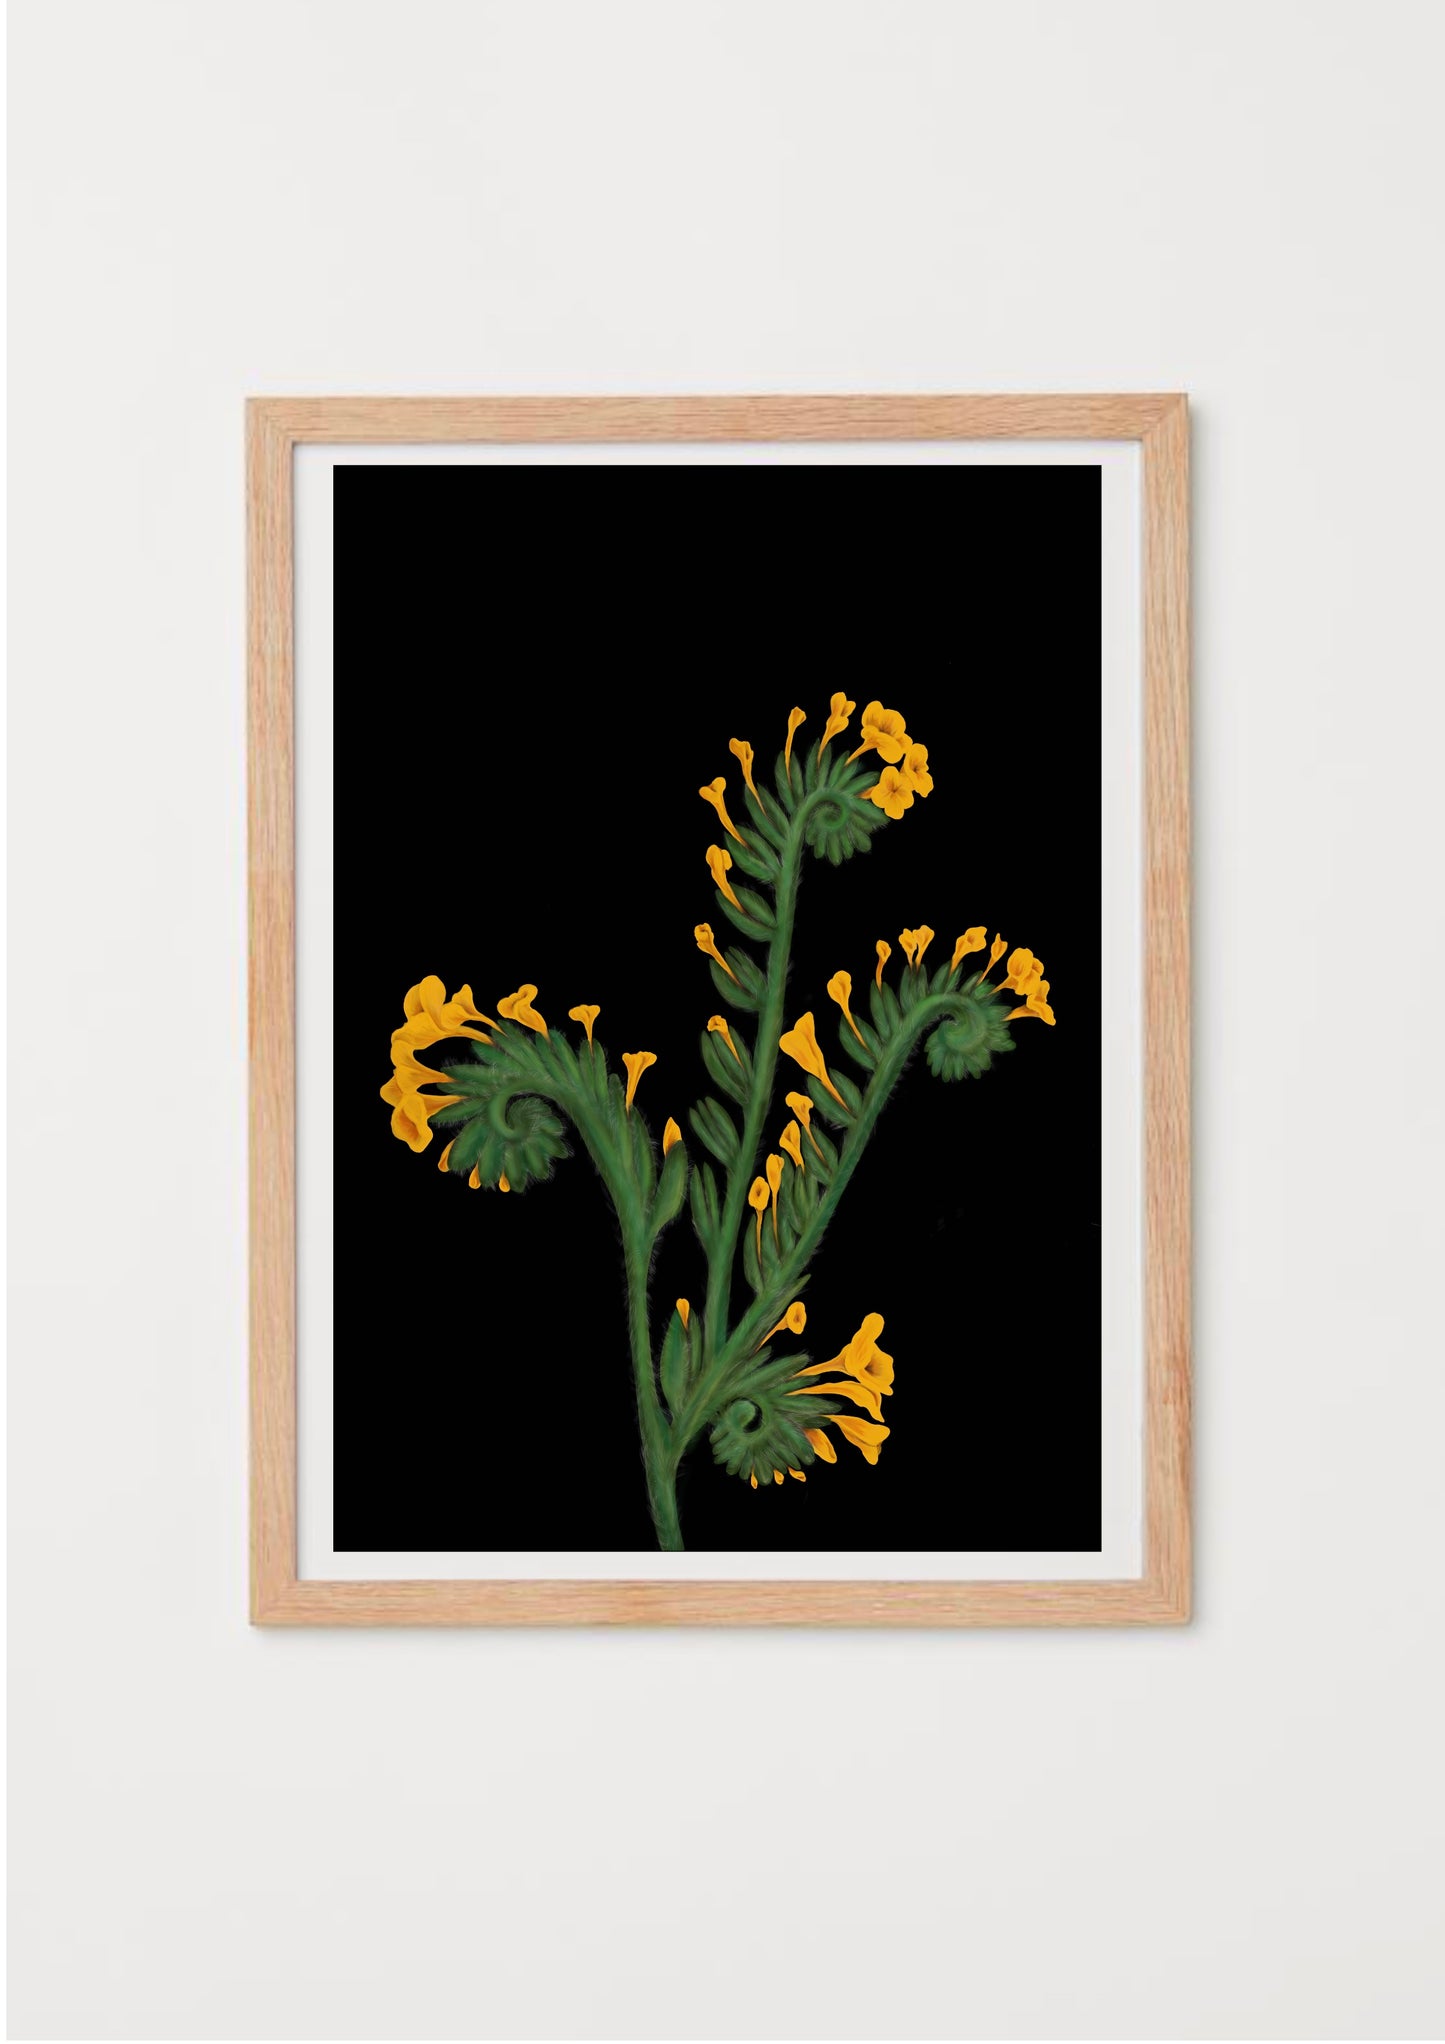 California Wildflower Fiddleneck Art Print on black background by Emma de la Pena 